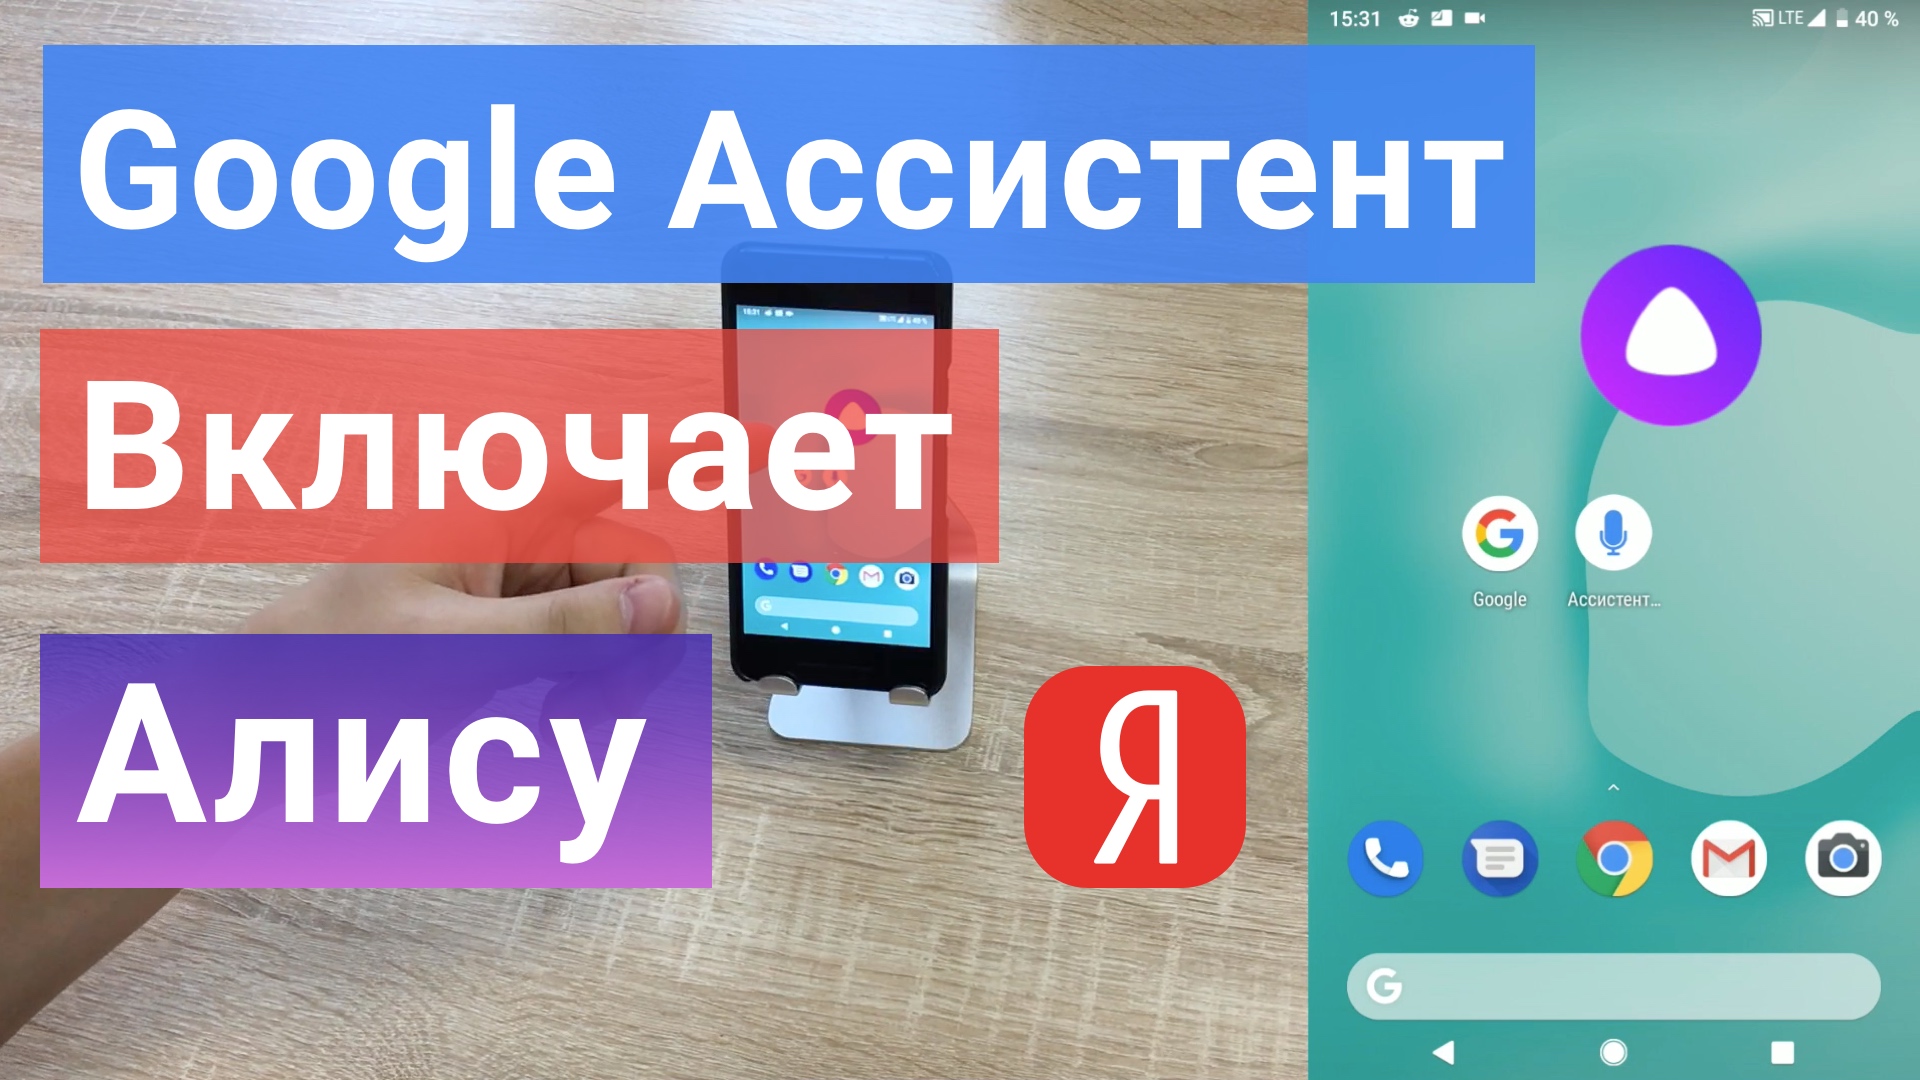 Яндекс АЛИСА как активировать на Android С ЛЮБОГО ЭКРАНА голосом без рук на заблокированном экране